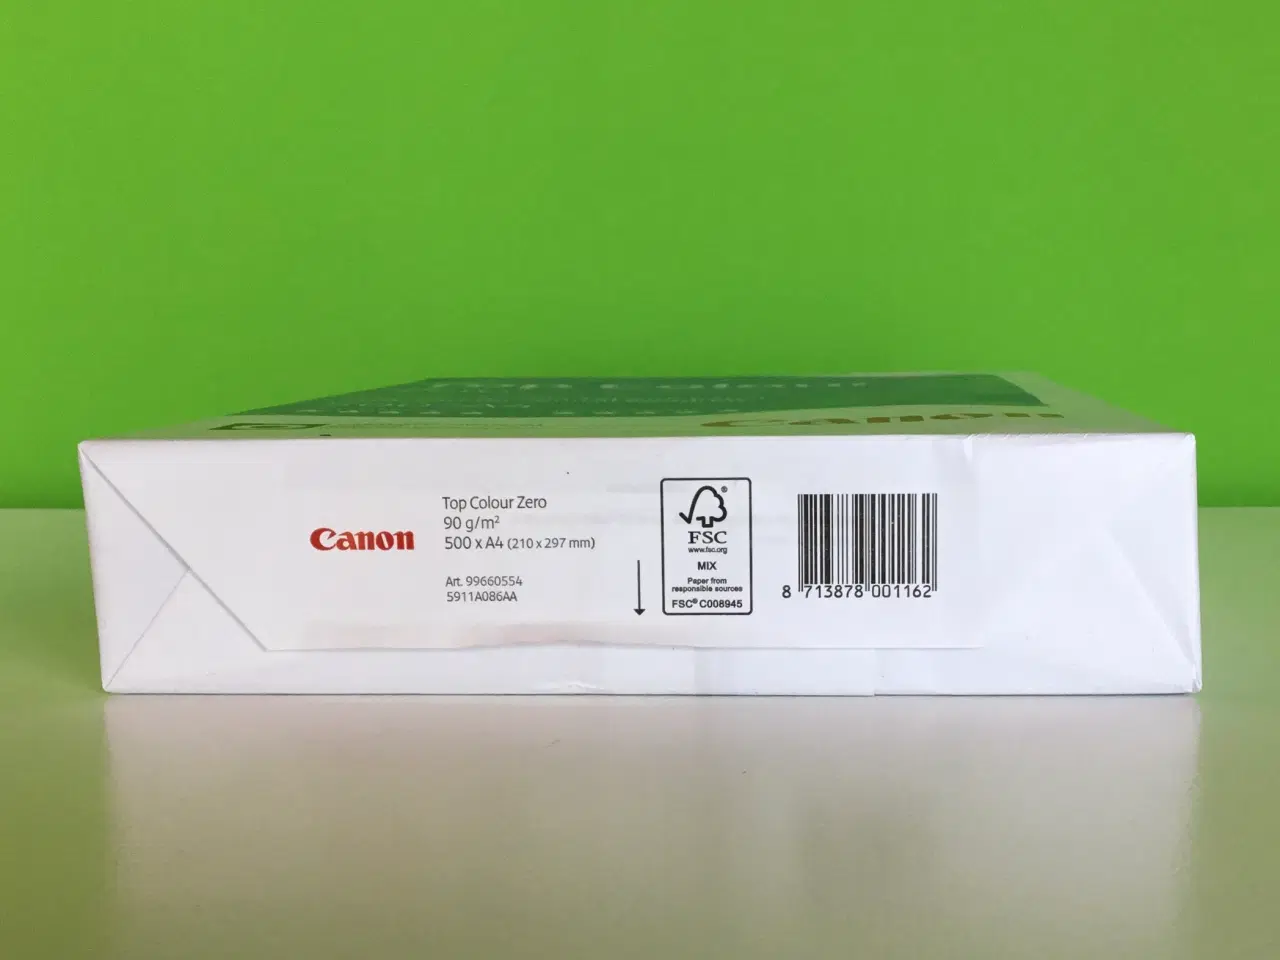 Billede 3 - Canon kopi- og printerpapir i top kvalitet